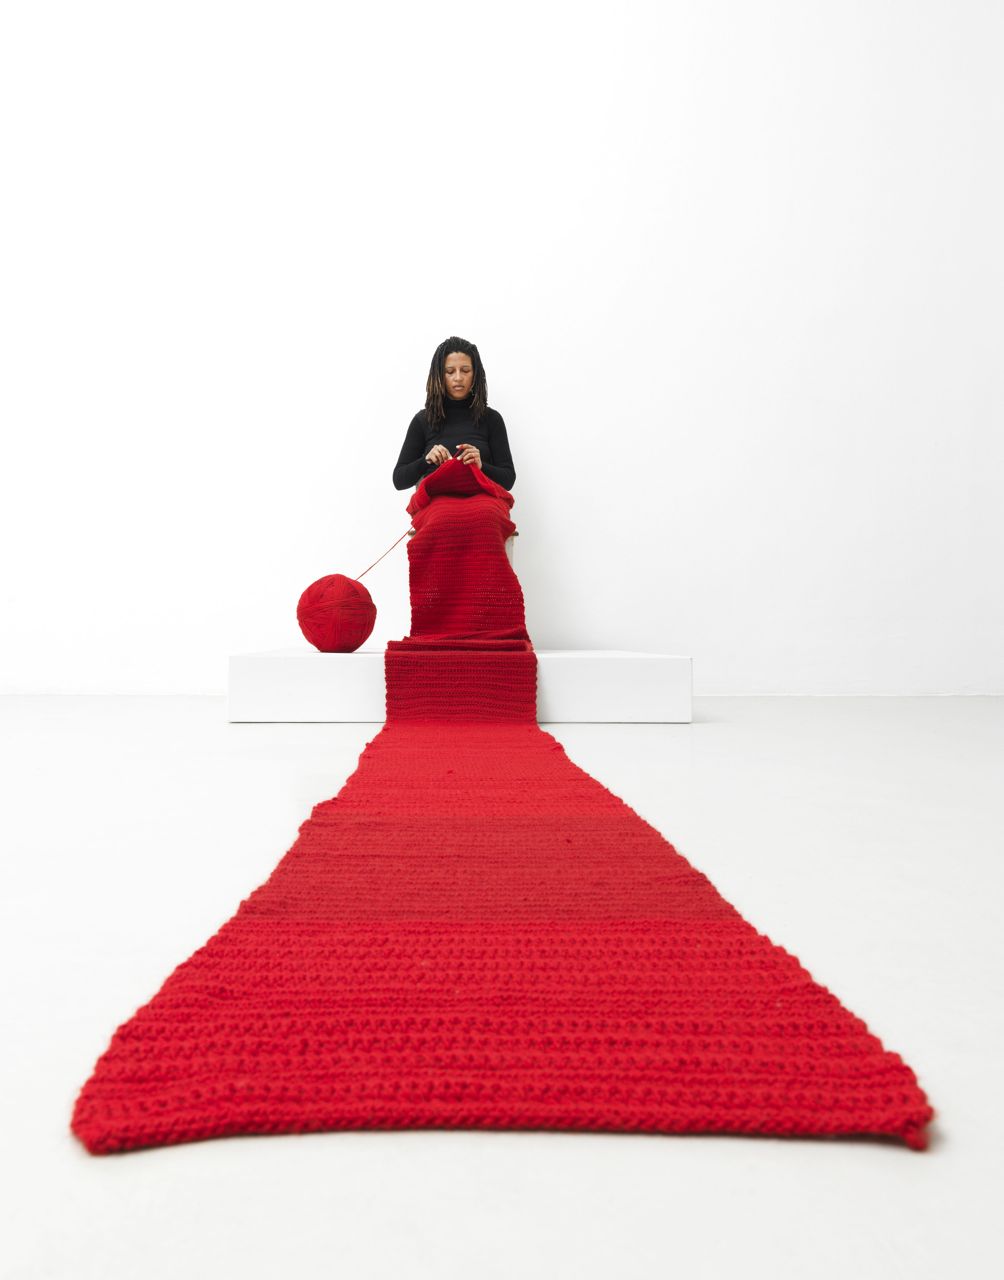 nbk_Lerato_Shadi_Performance.jpg Lerato Shadi, Mosaka wa nako, 2014, Performance im Neuen Berliner Kunstverein, 2014 © Neuer Berliner Kunstverein / Jens Ziehe